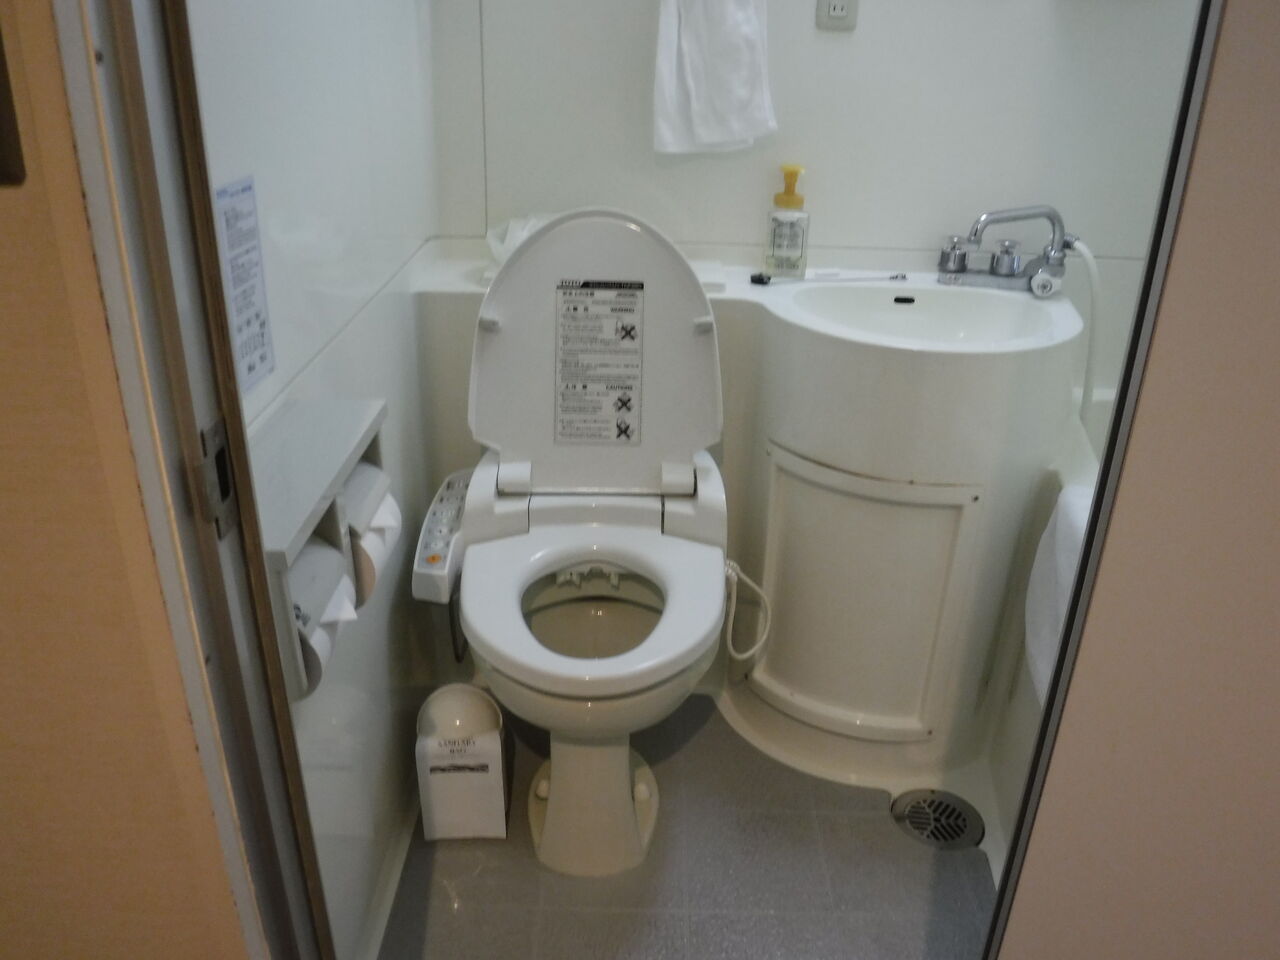 ユニットバスで見かけるトイレ器具 Toyoの旅行とトイレ調査日記